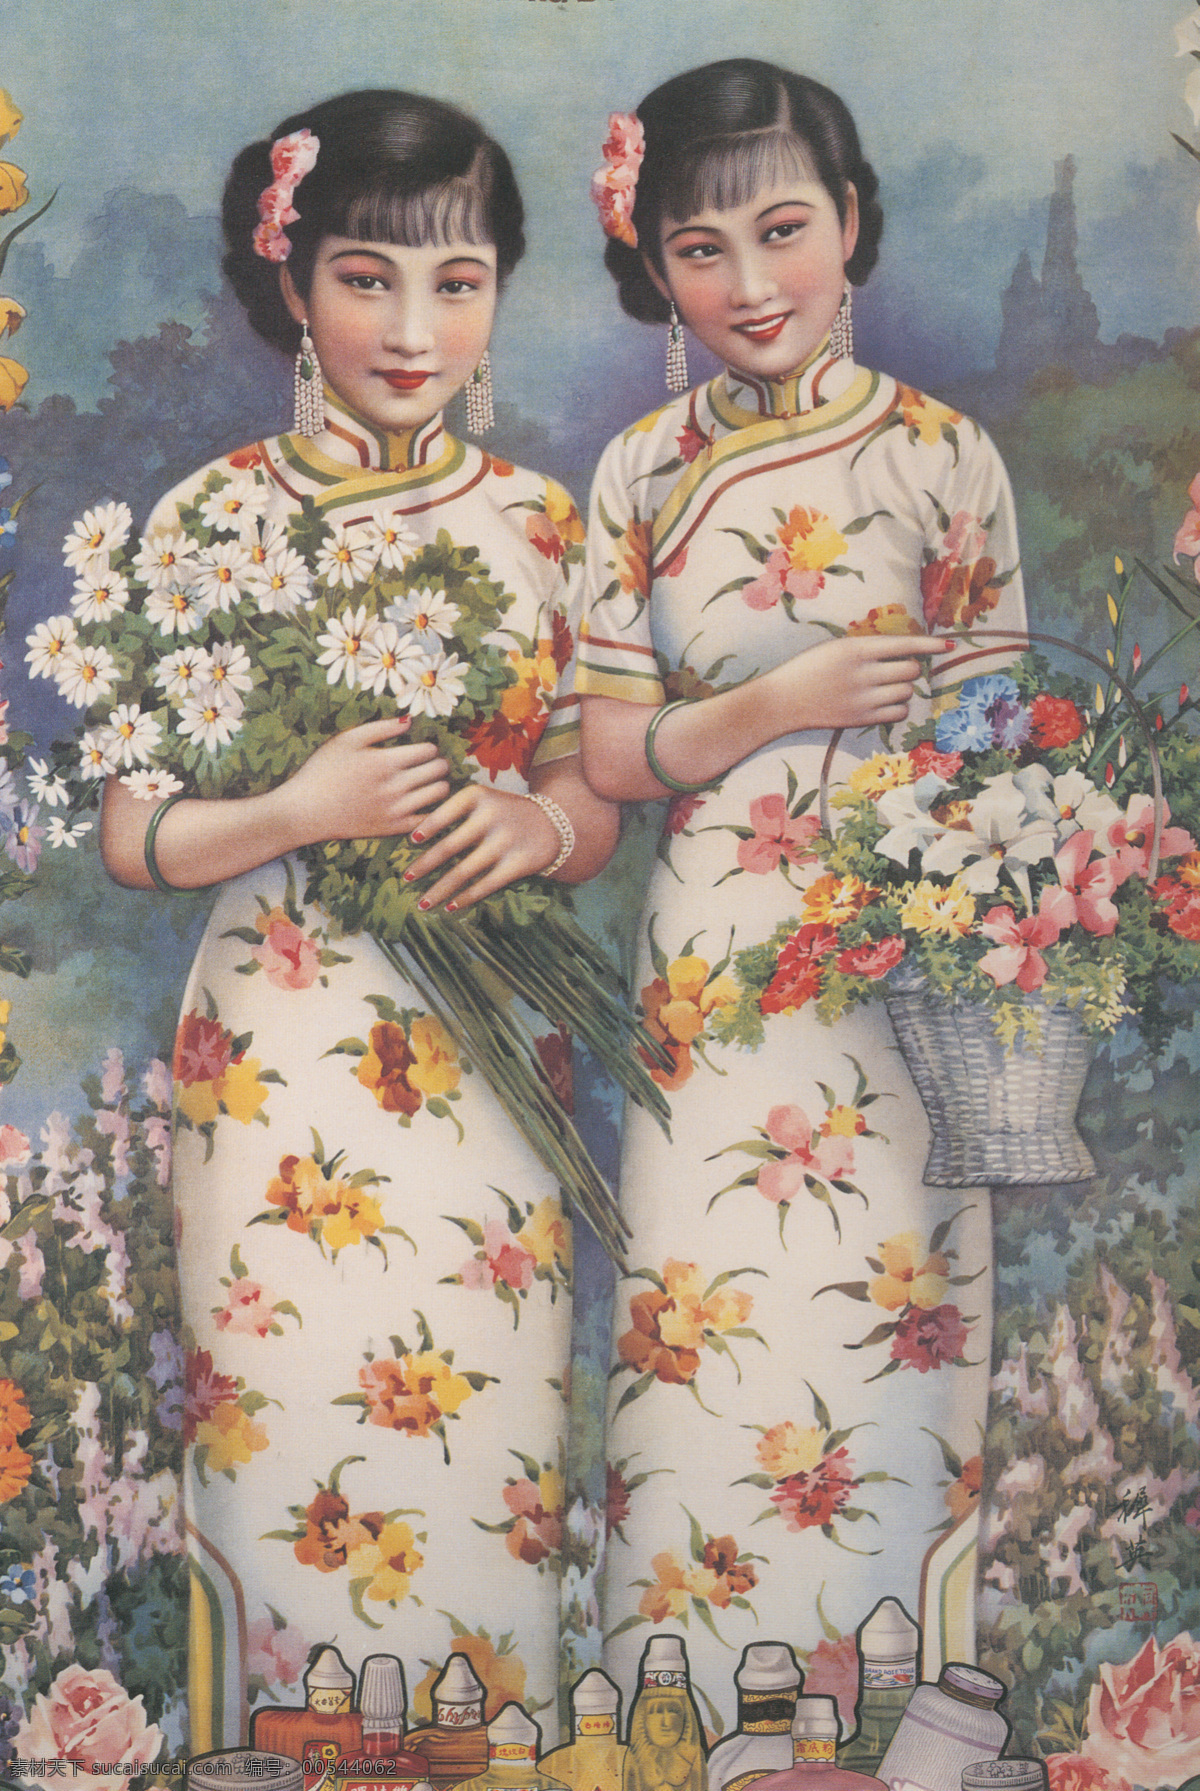 上海滩 月历 美女 复古 人物图库 女性妇女 设计图库 300